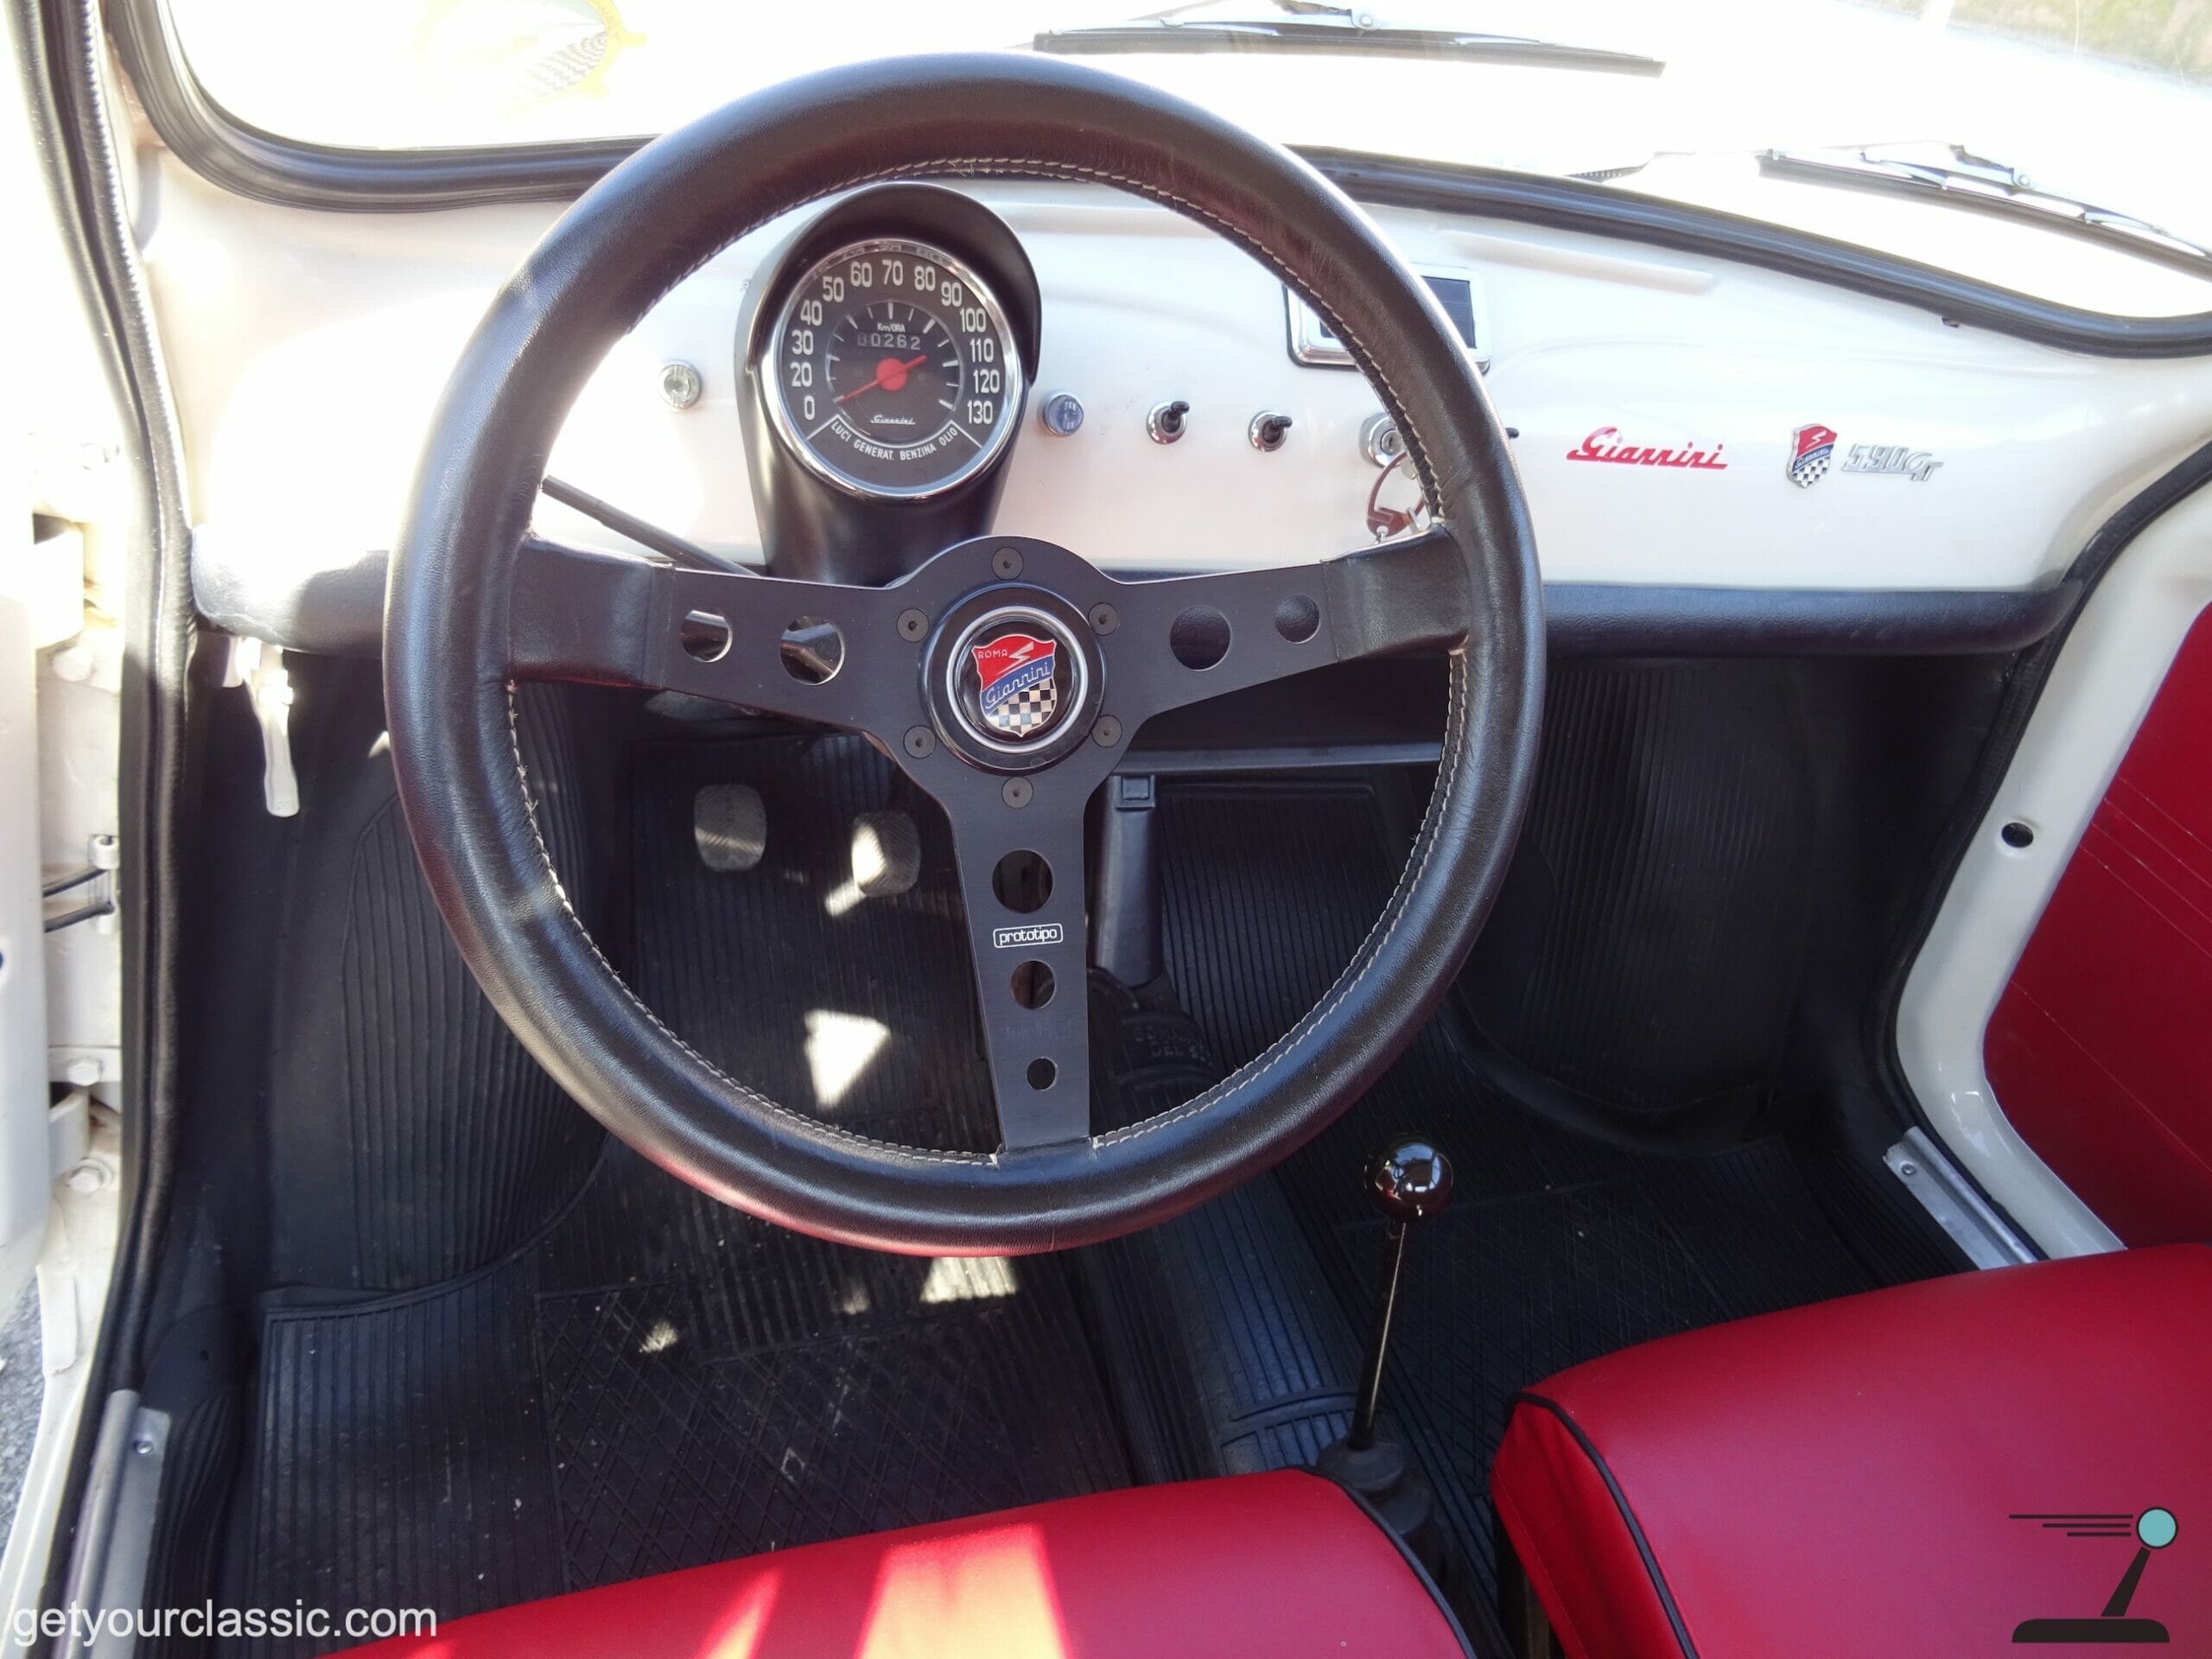 Fiat/Giannini 590 GT - little racer